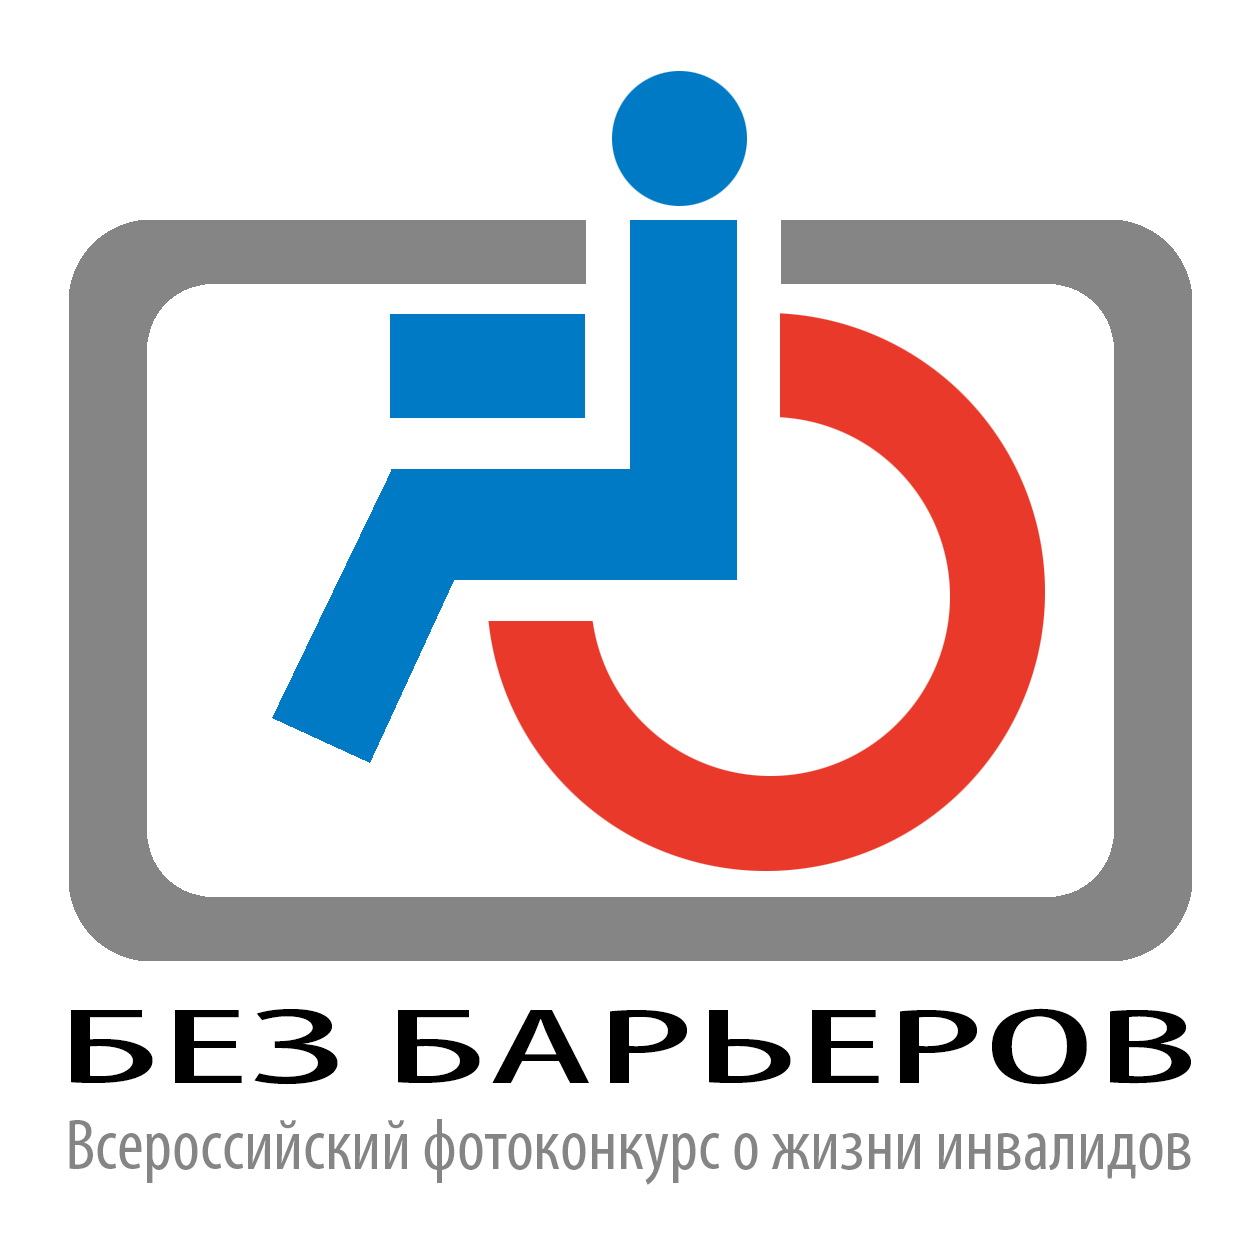 Вои общество инвалидов. Эмблема общества инвалидов. Всероссийское общество инвалидов логотип. Логотип ВОИ инвалид. Без барьеров.